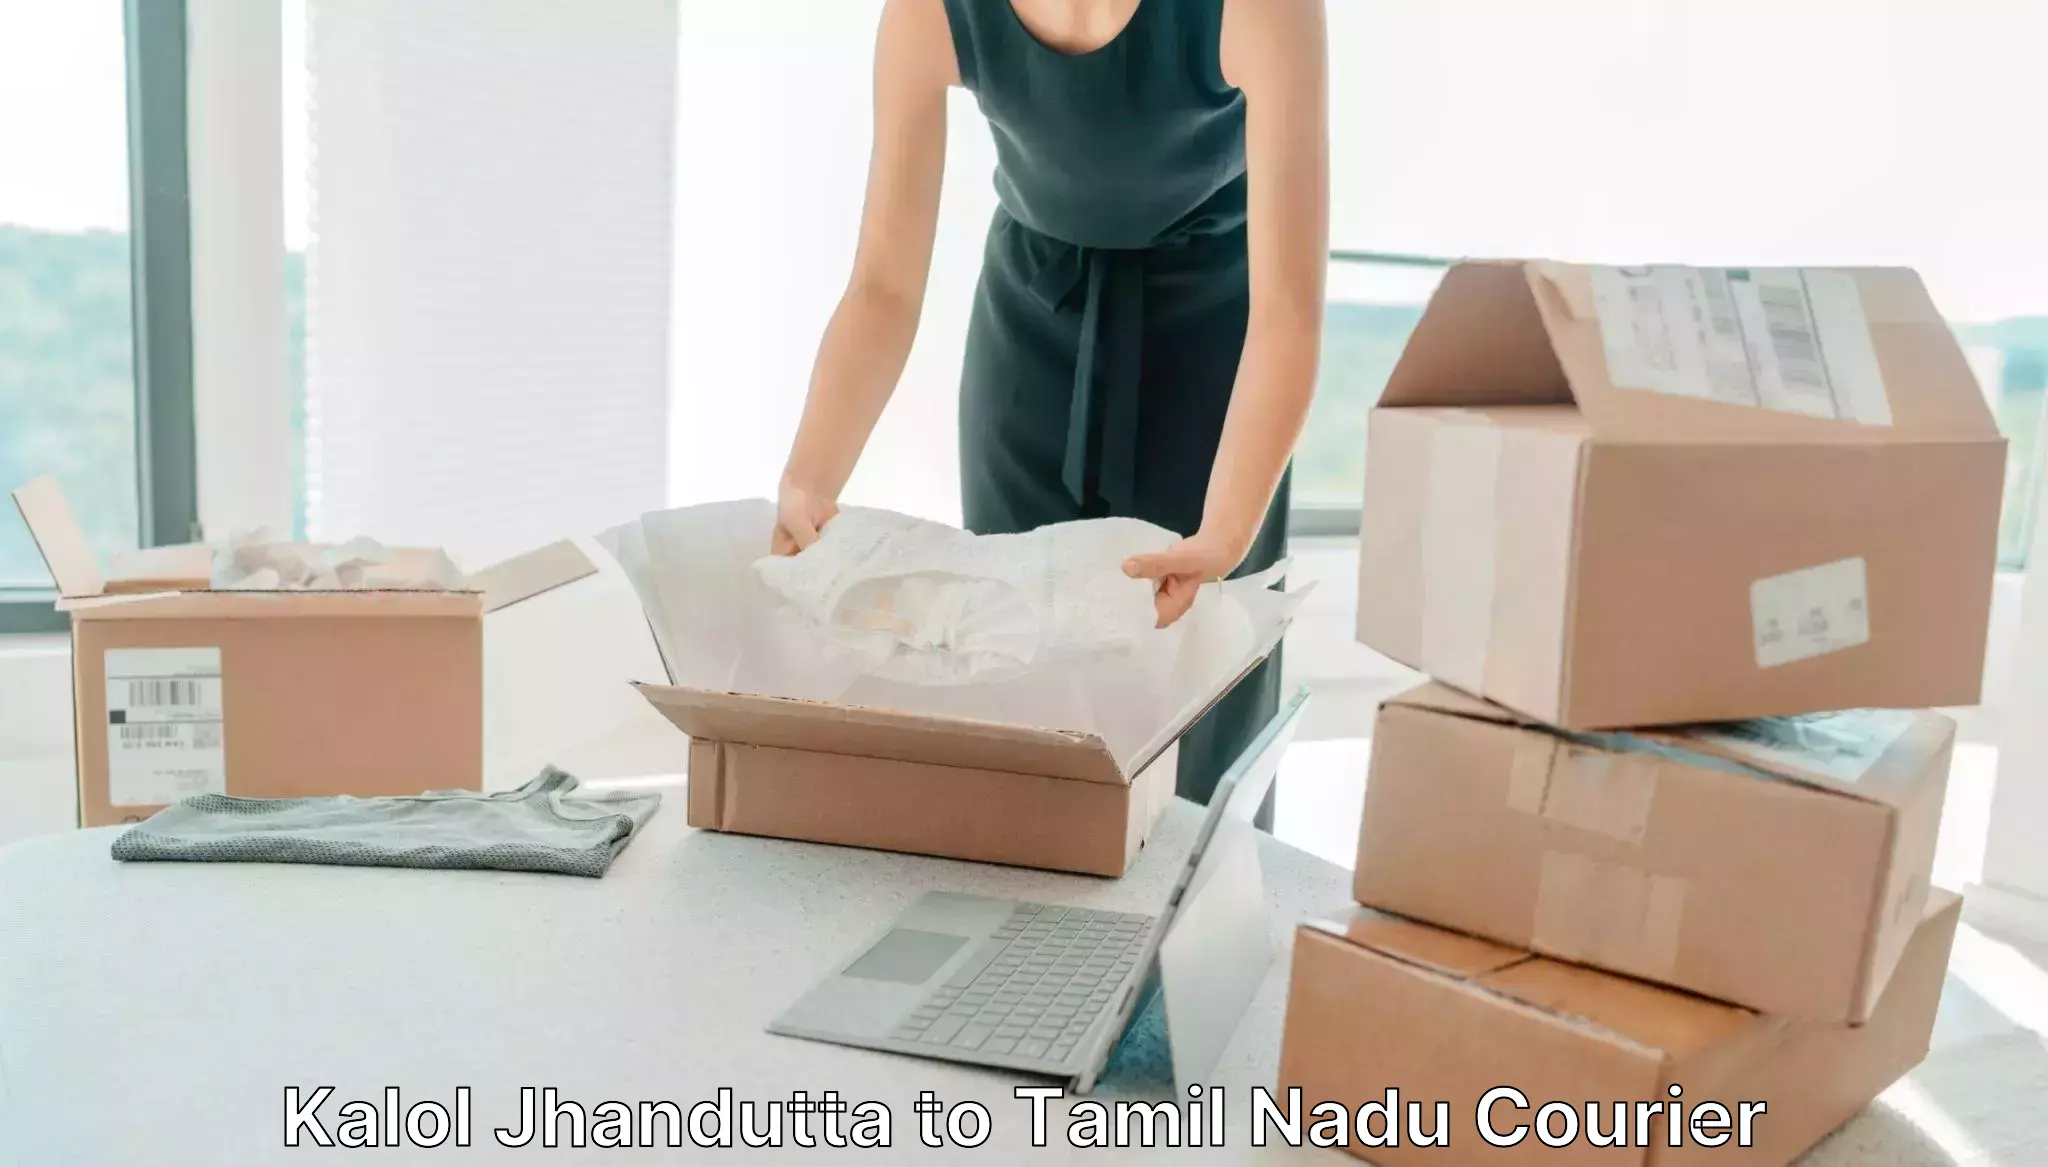 Small business couriers Kalol Jhandutta to Lalpet